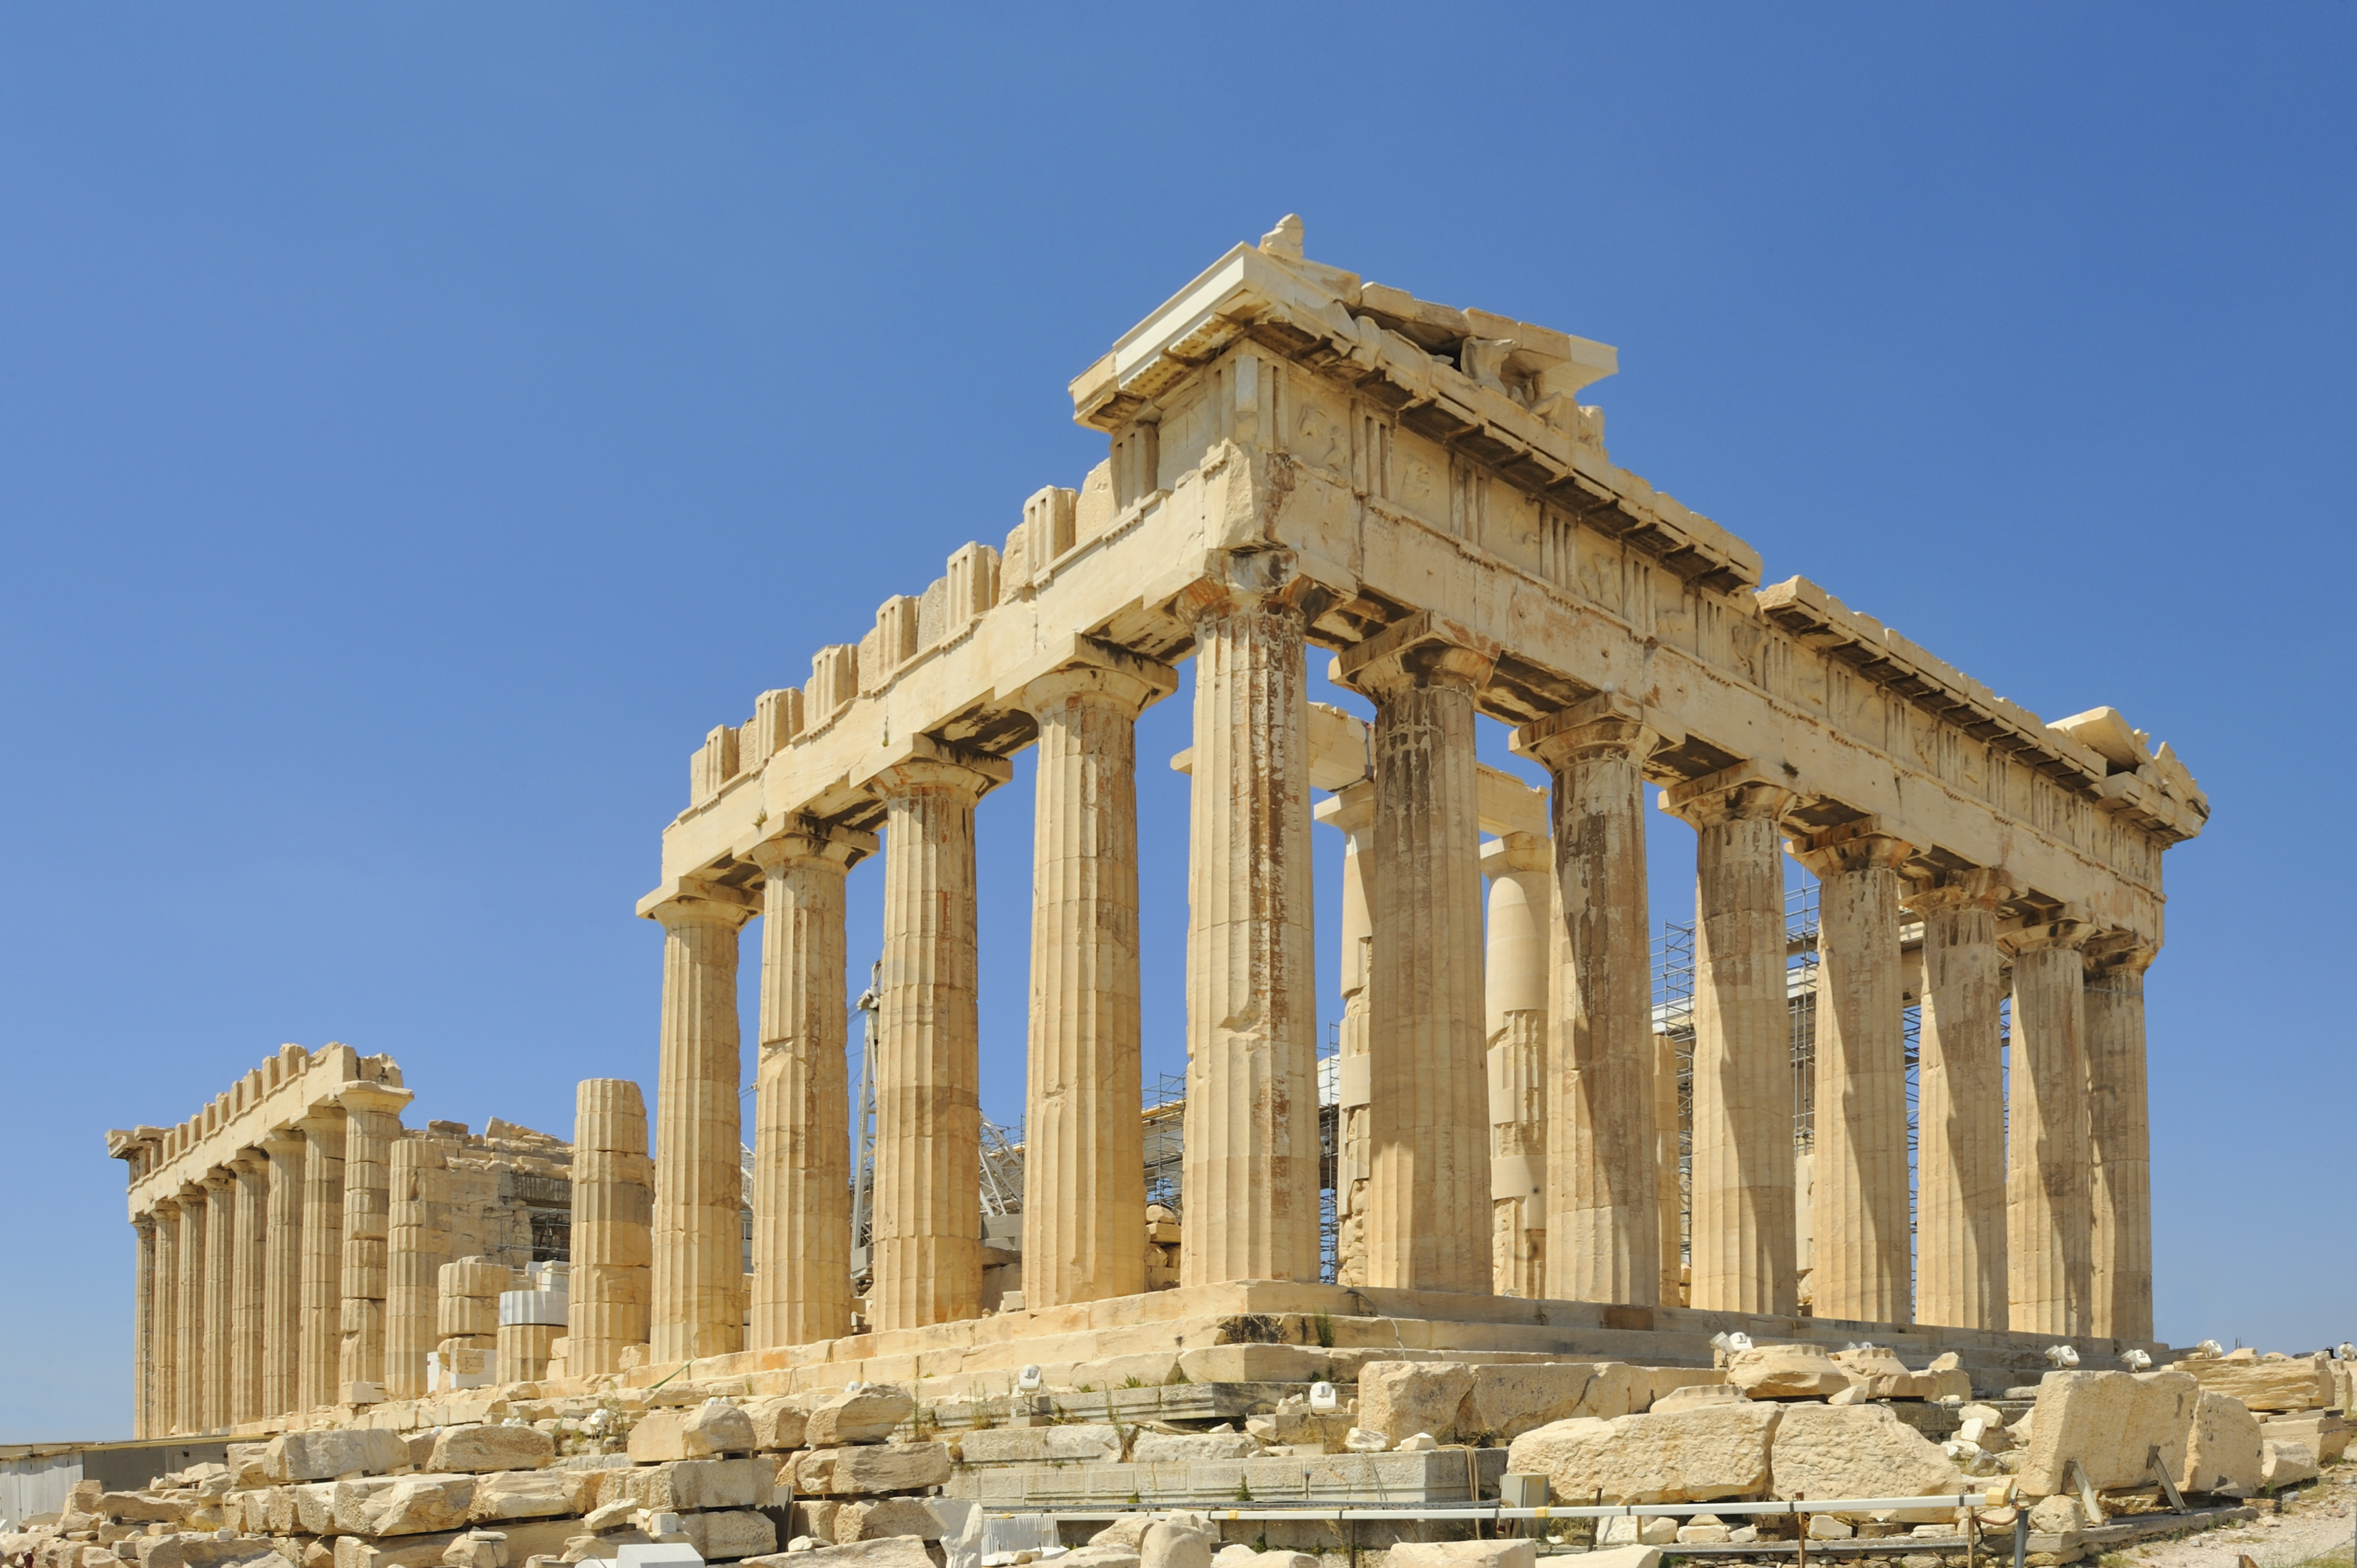 Italia împrumută Greciei un fragment din friza Parthenonului